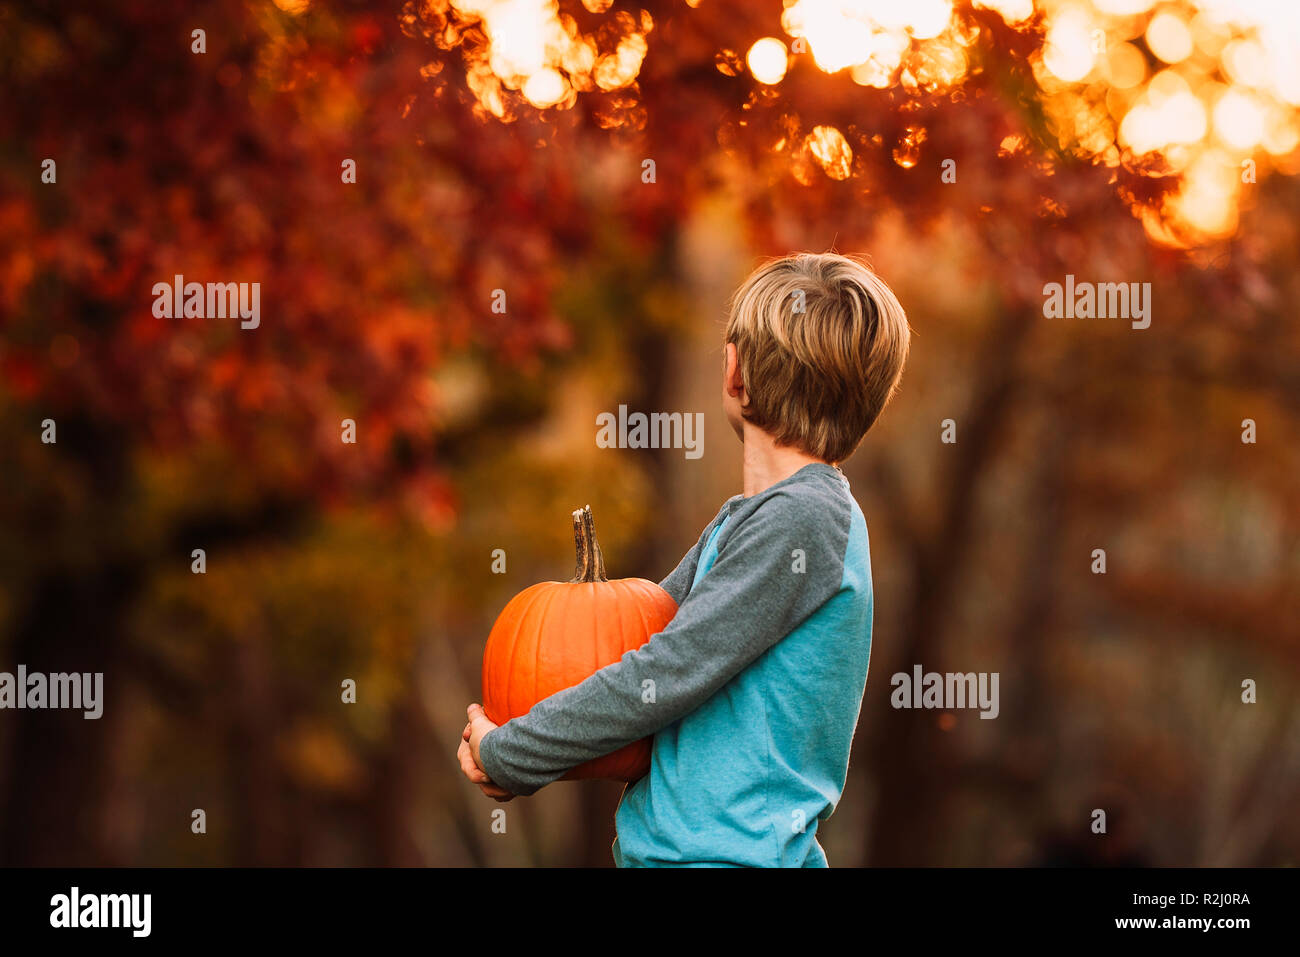 Retrato de un joven de pie en un jardín llevando una calabaza, Estados Unidos Foto de stock